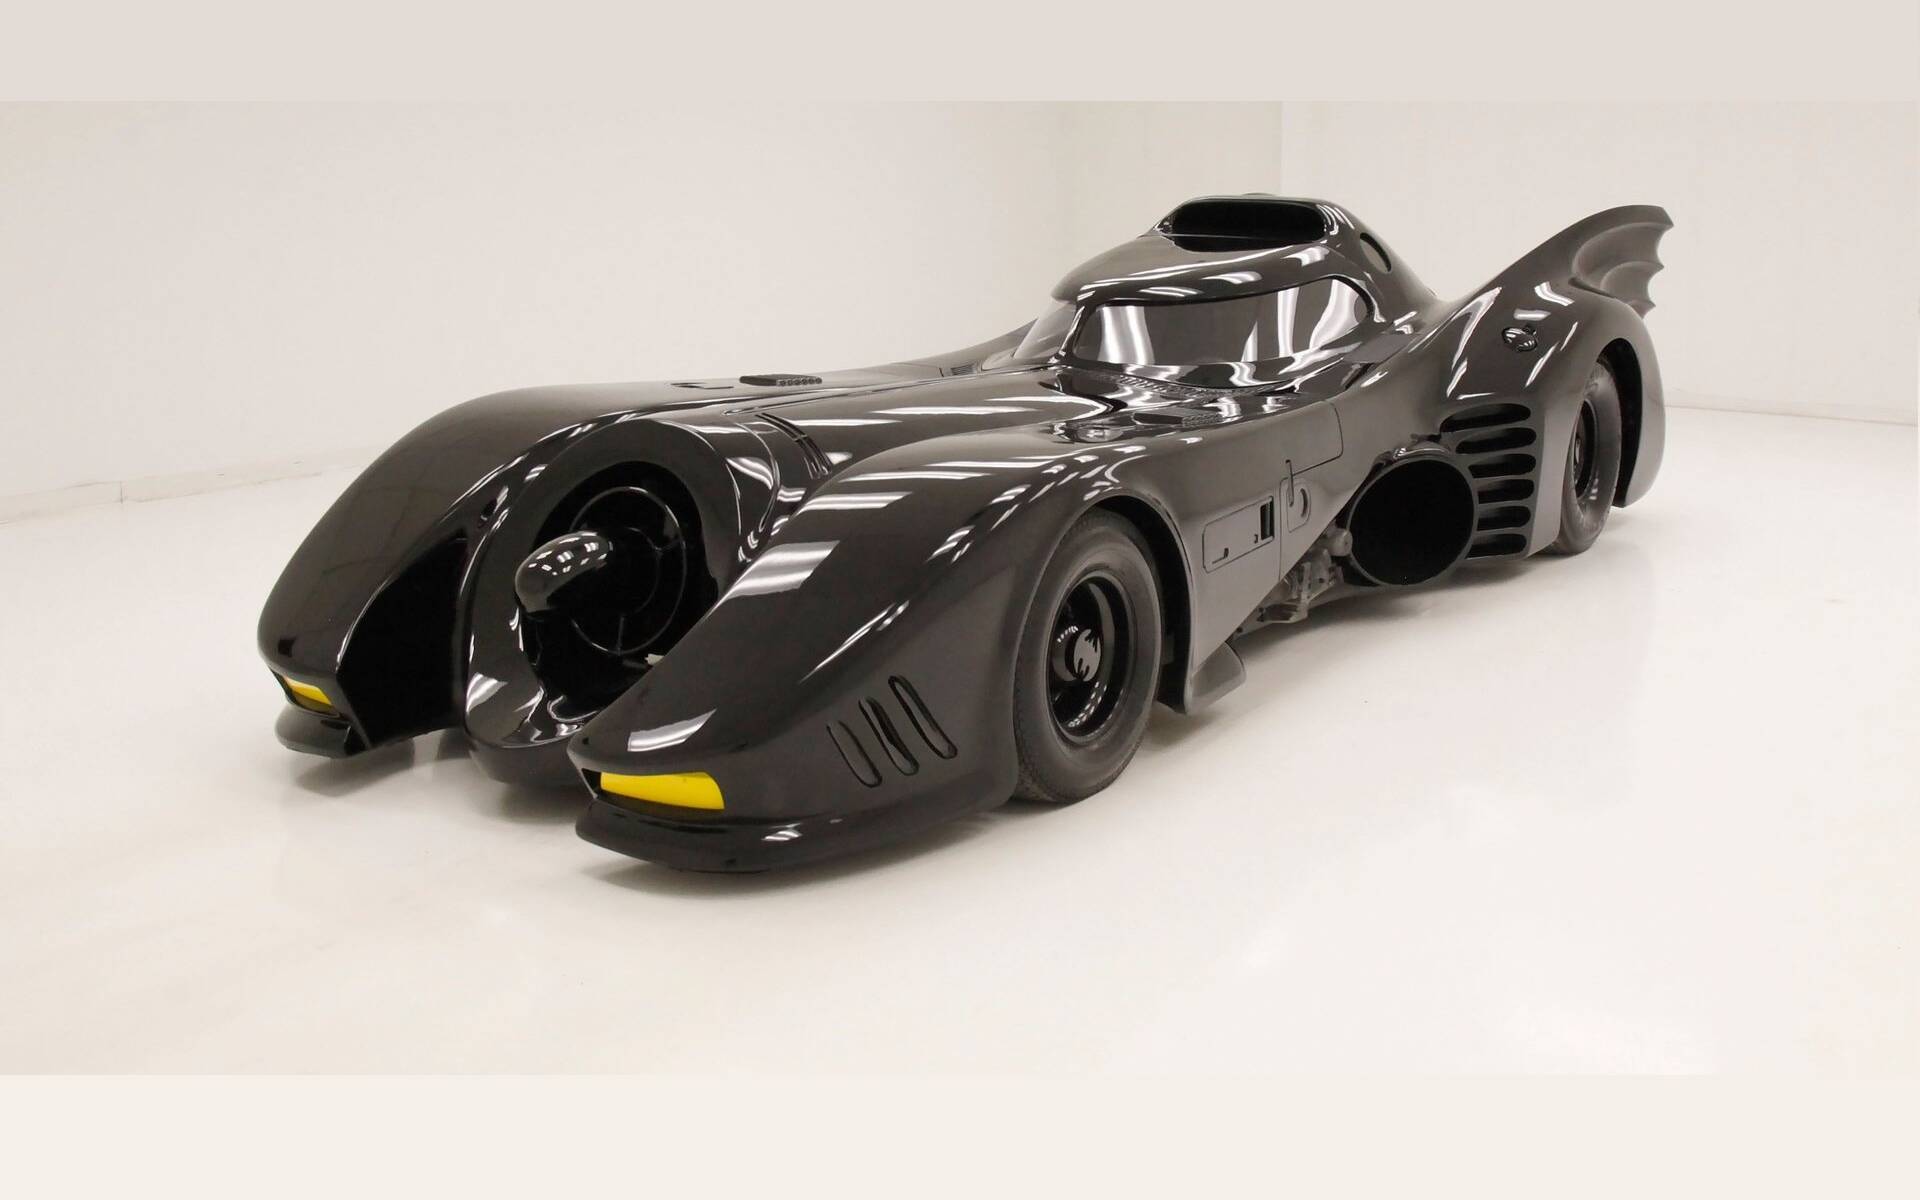 Voiture miniature 'Batman' - 1989 Batmobile & Batman